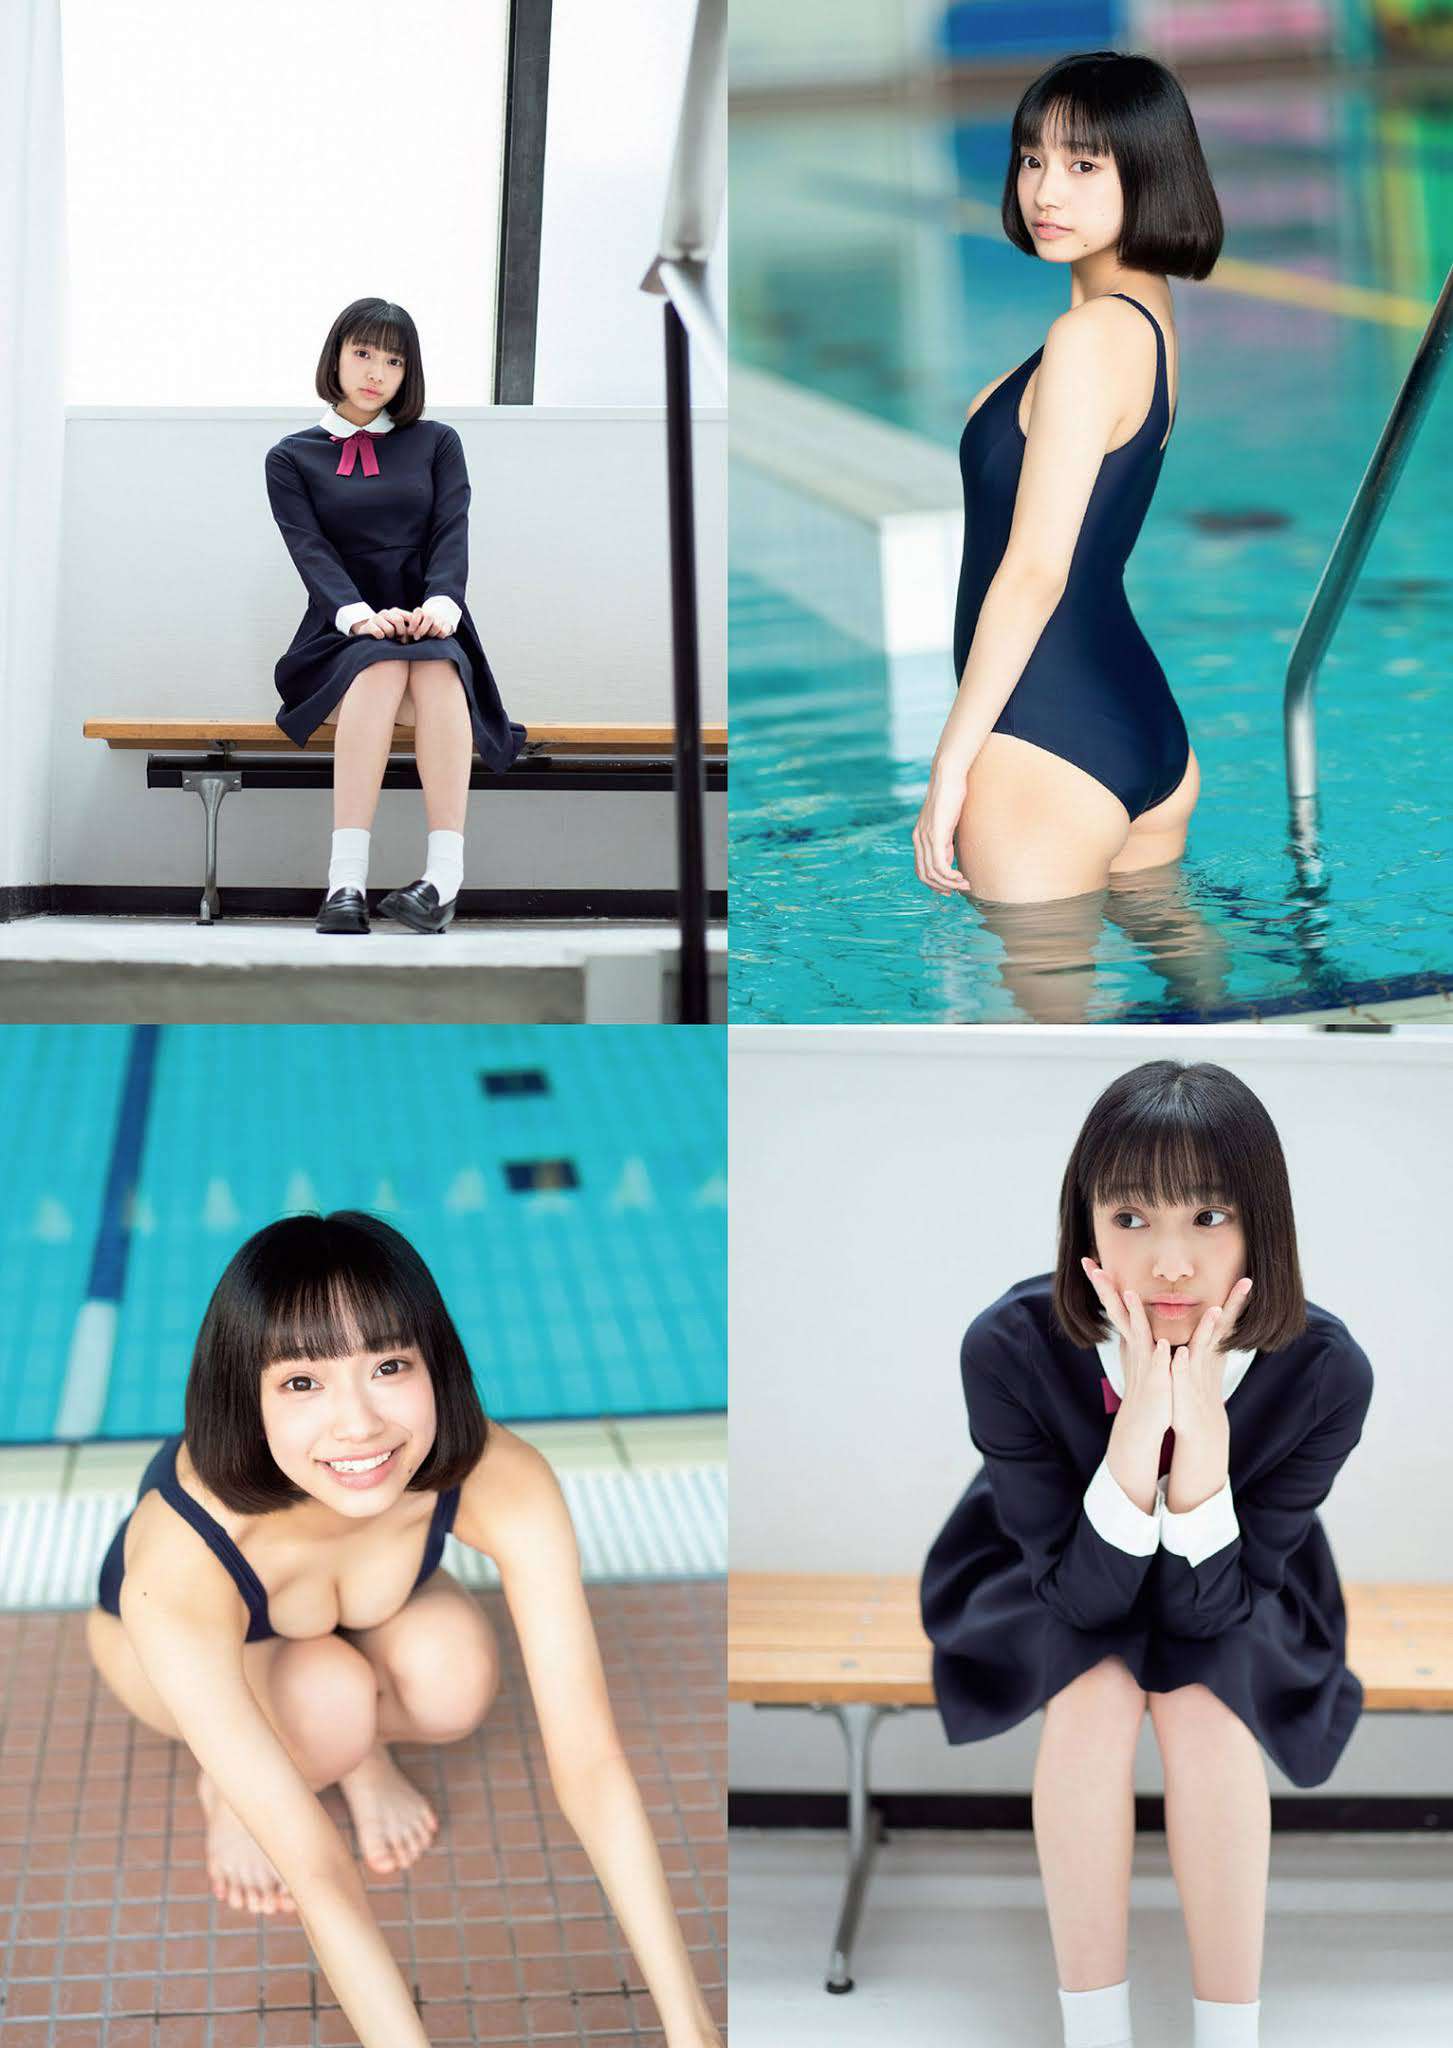 日本少女偶像《天使もも》写真「死库水」-第6张图片